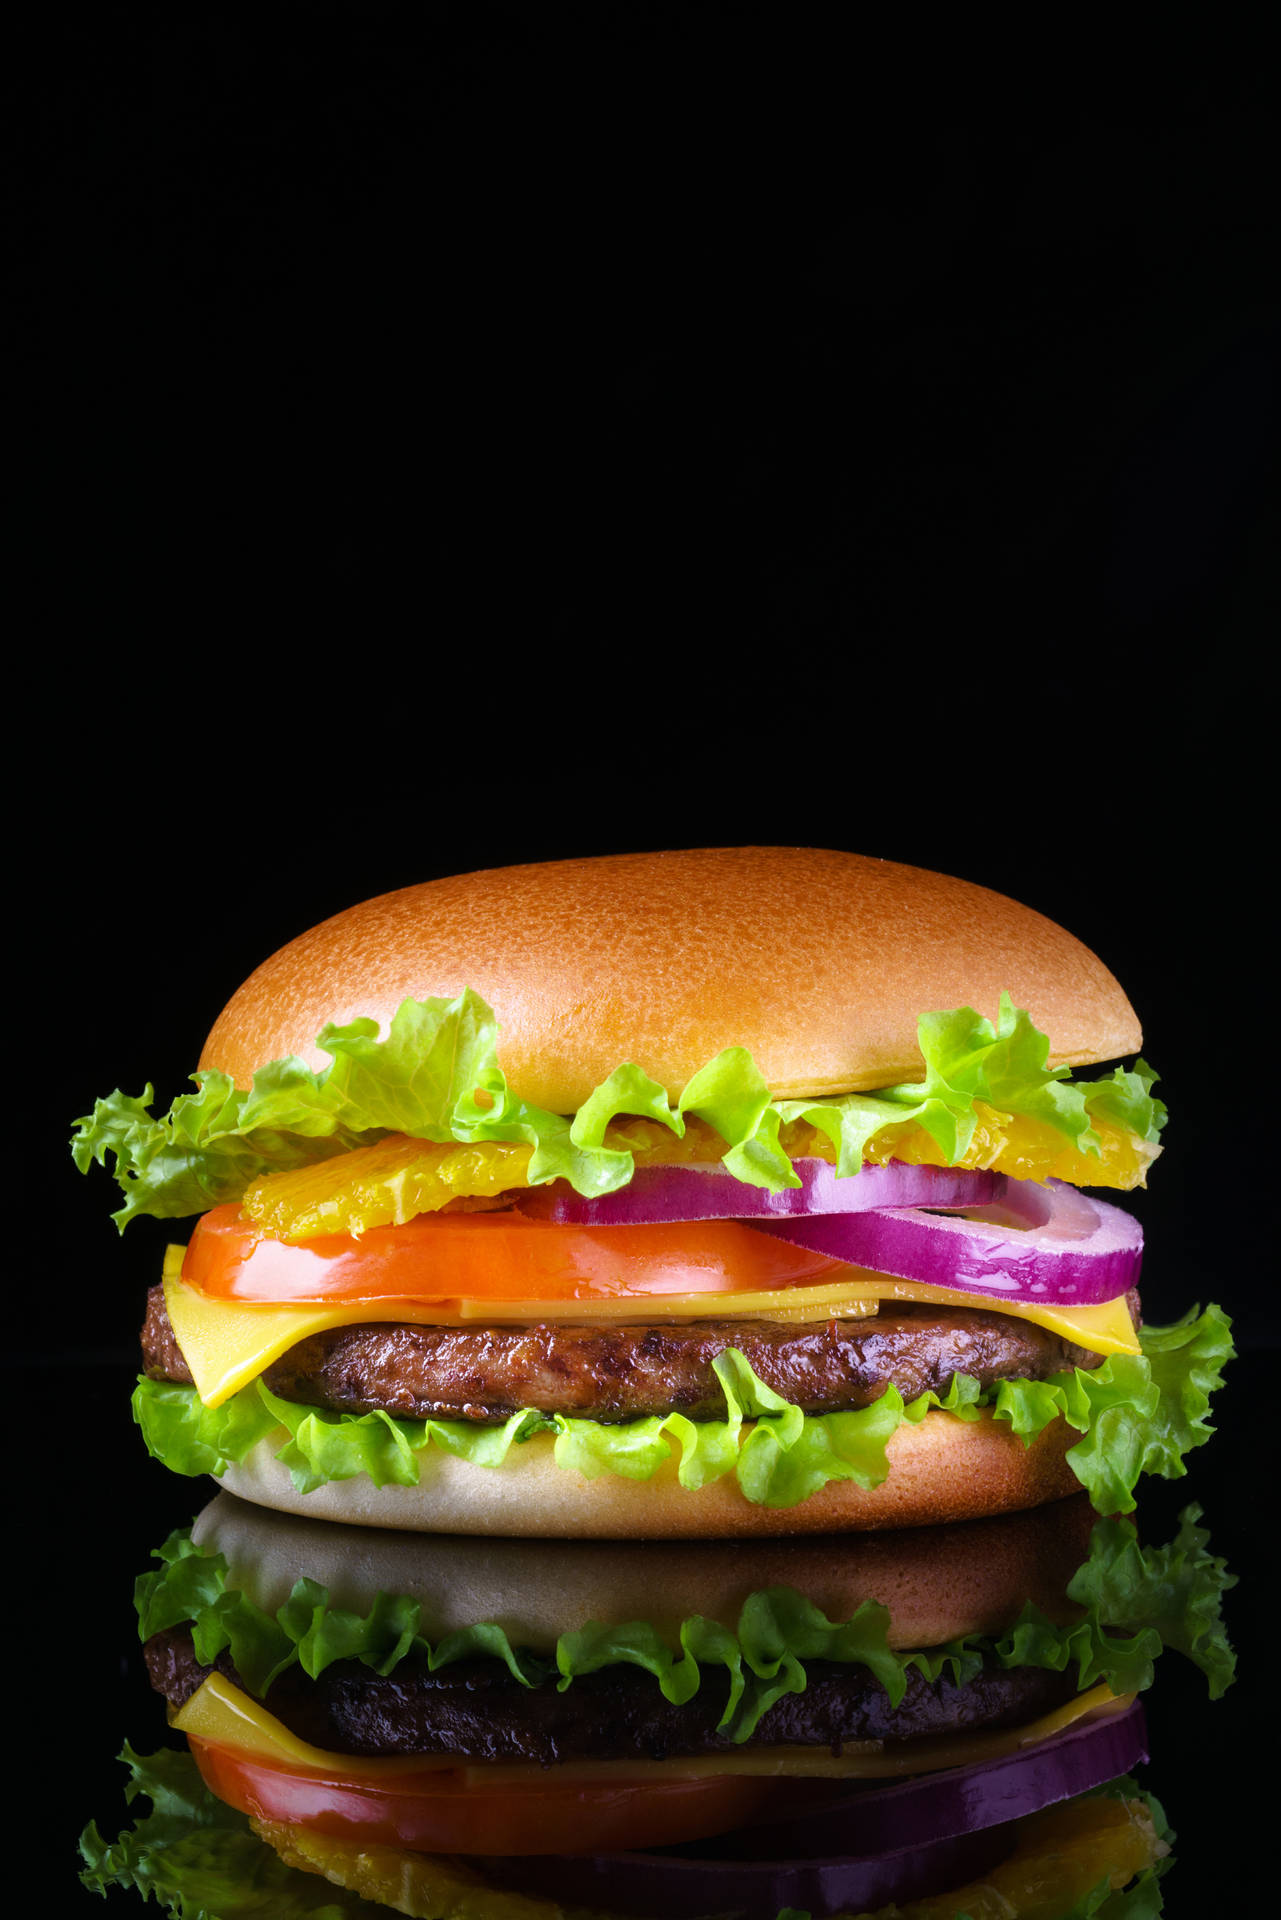 Cheeseburger 4912 X 7360 Wallpaper